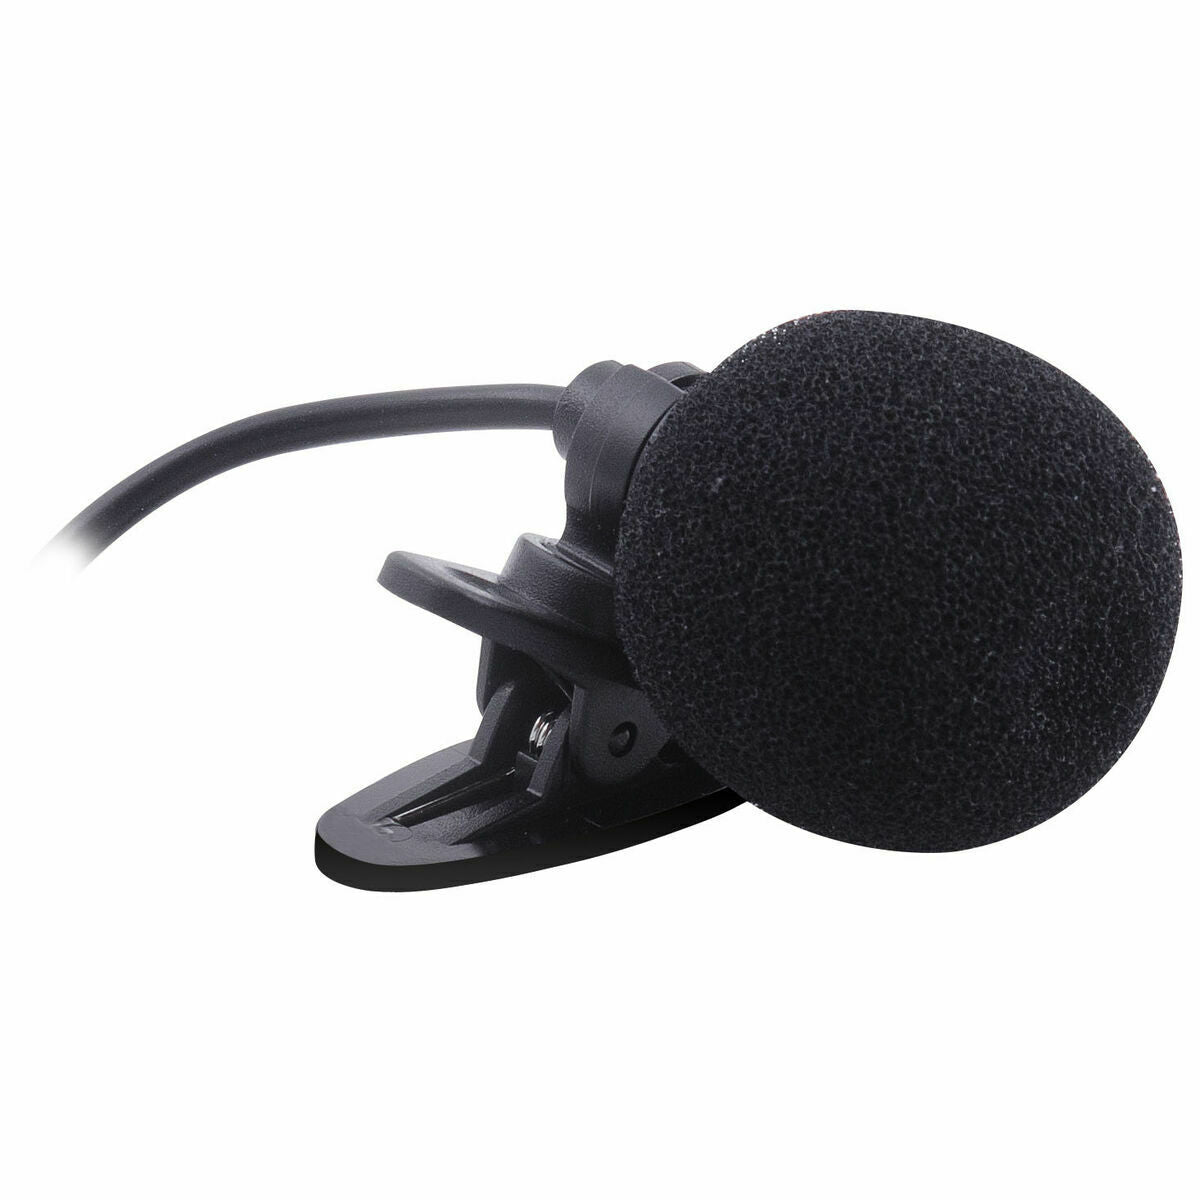 Microphone Elba Em 408 R Sans fil Noir (Reconditionné B)